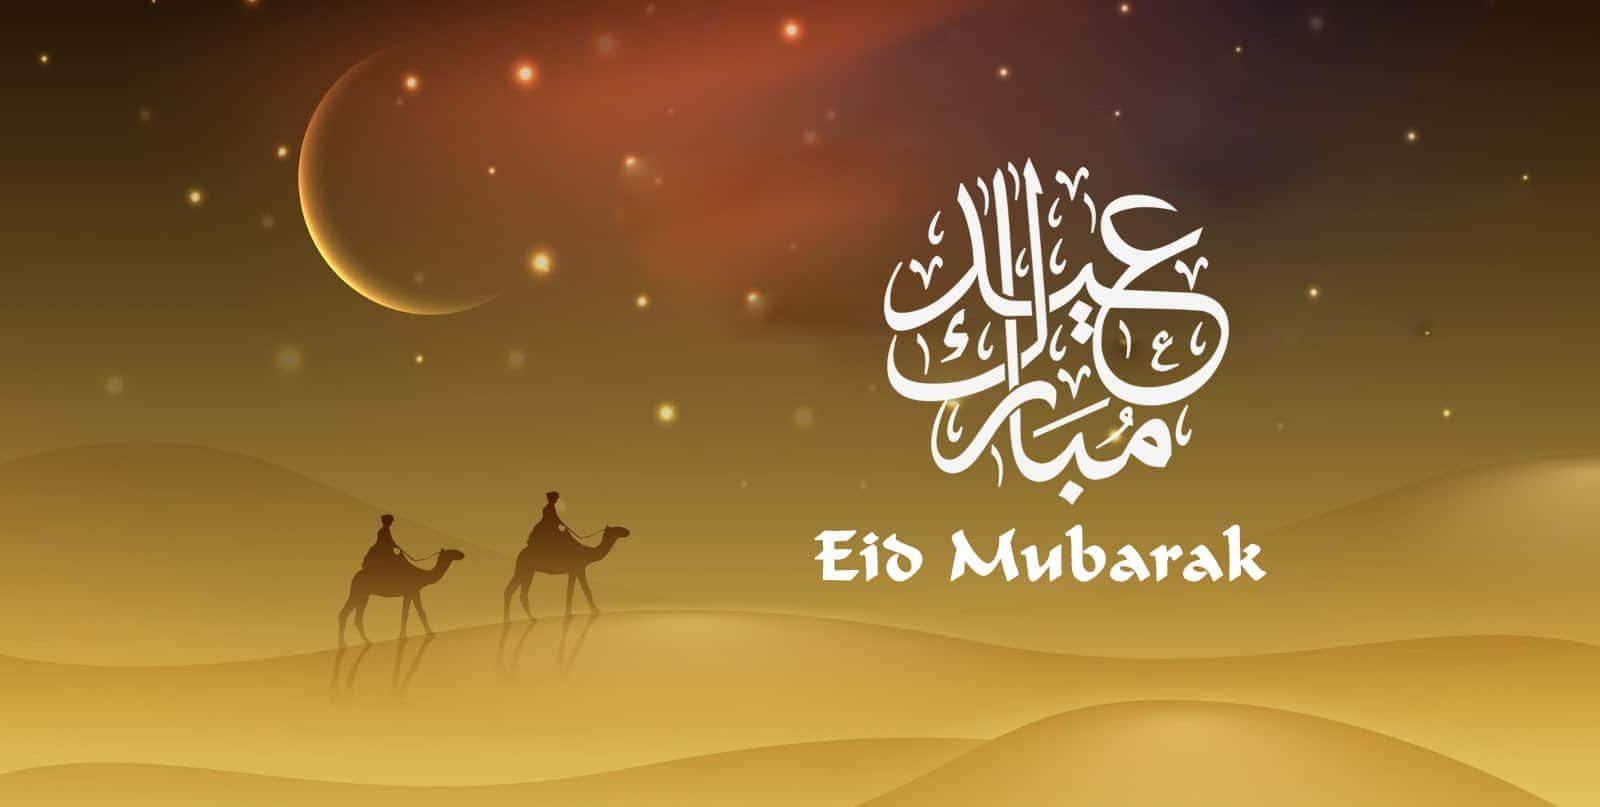 Ønskeralle En Glædelig Eid Mubarak!